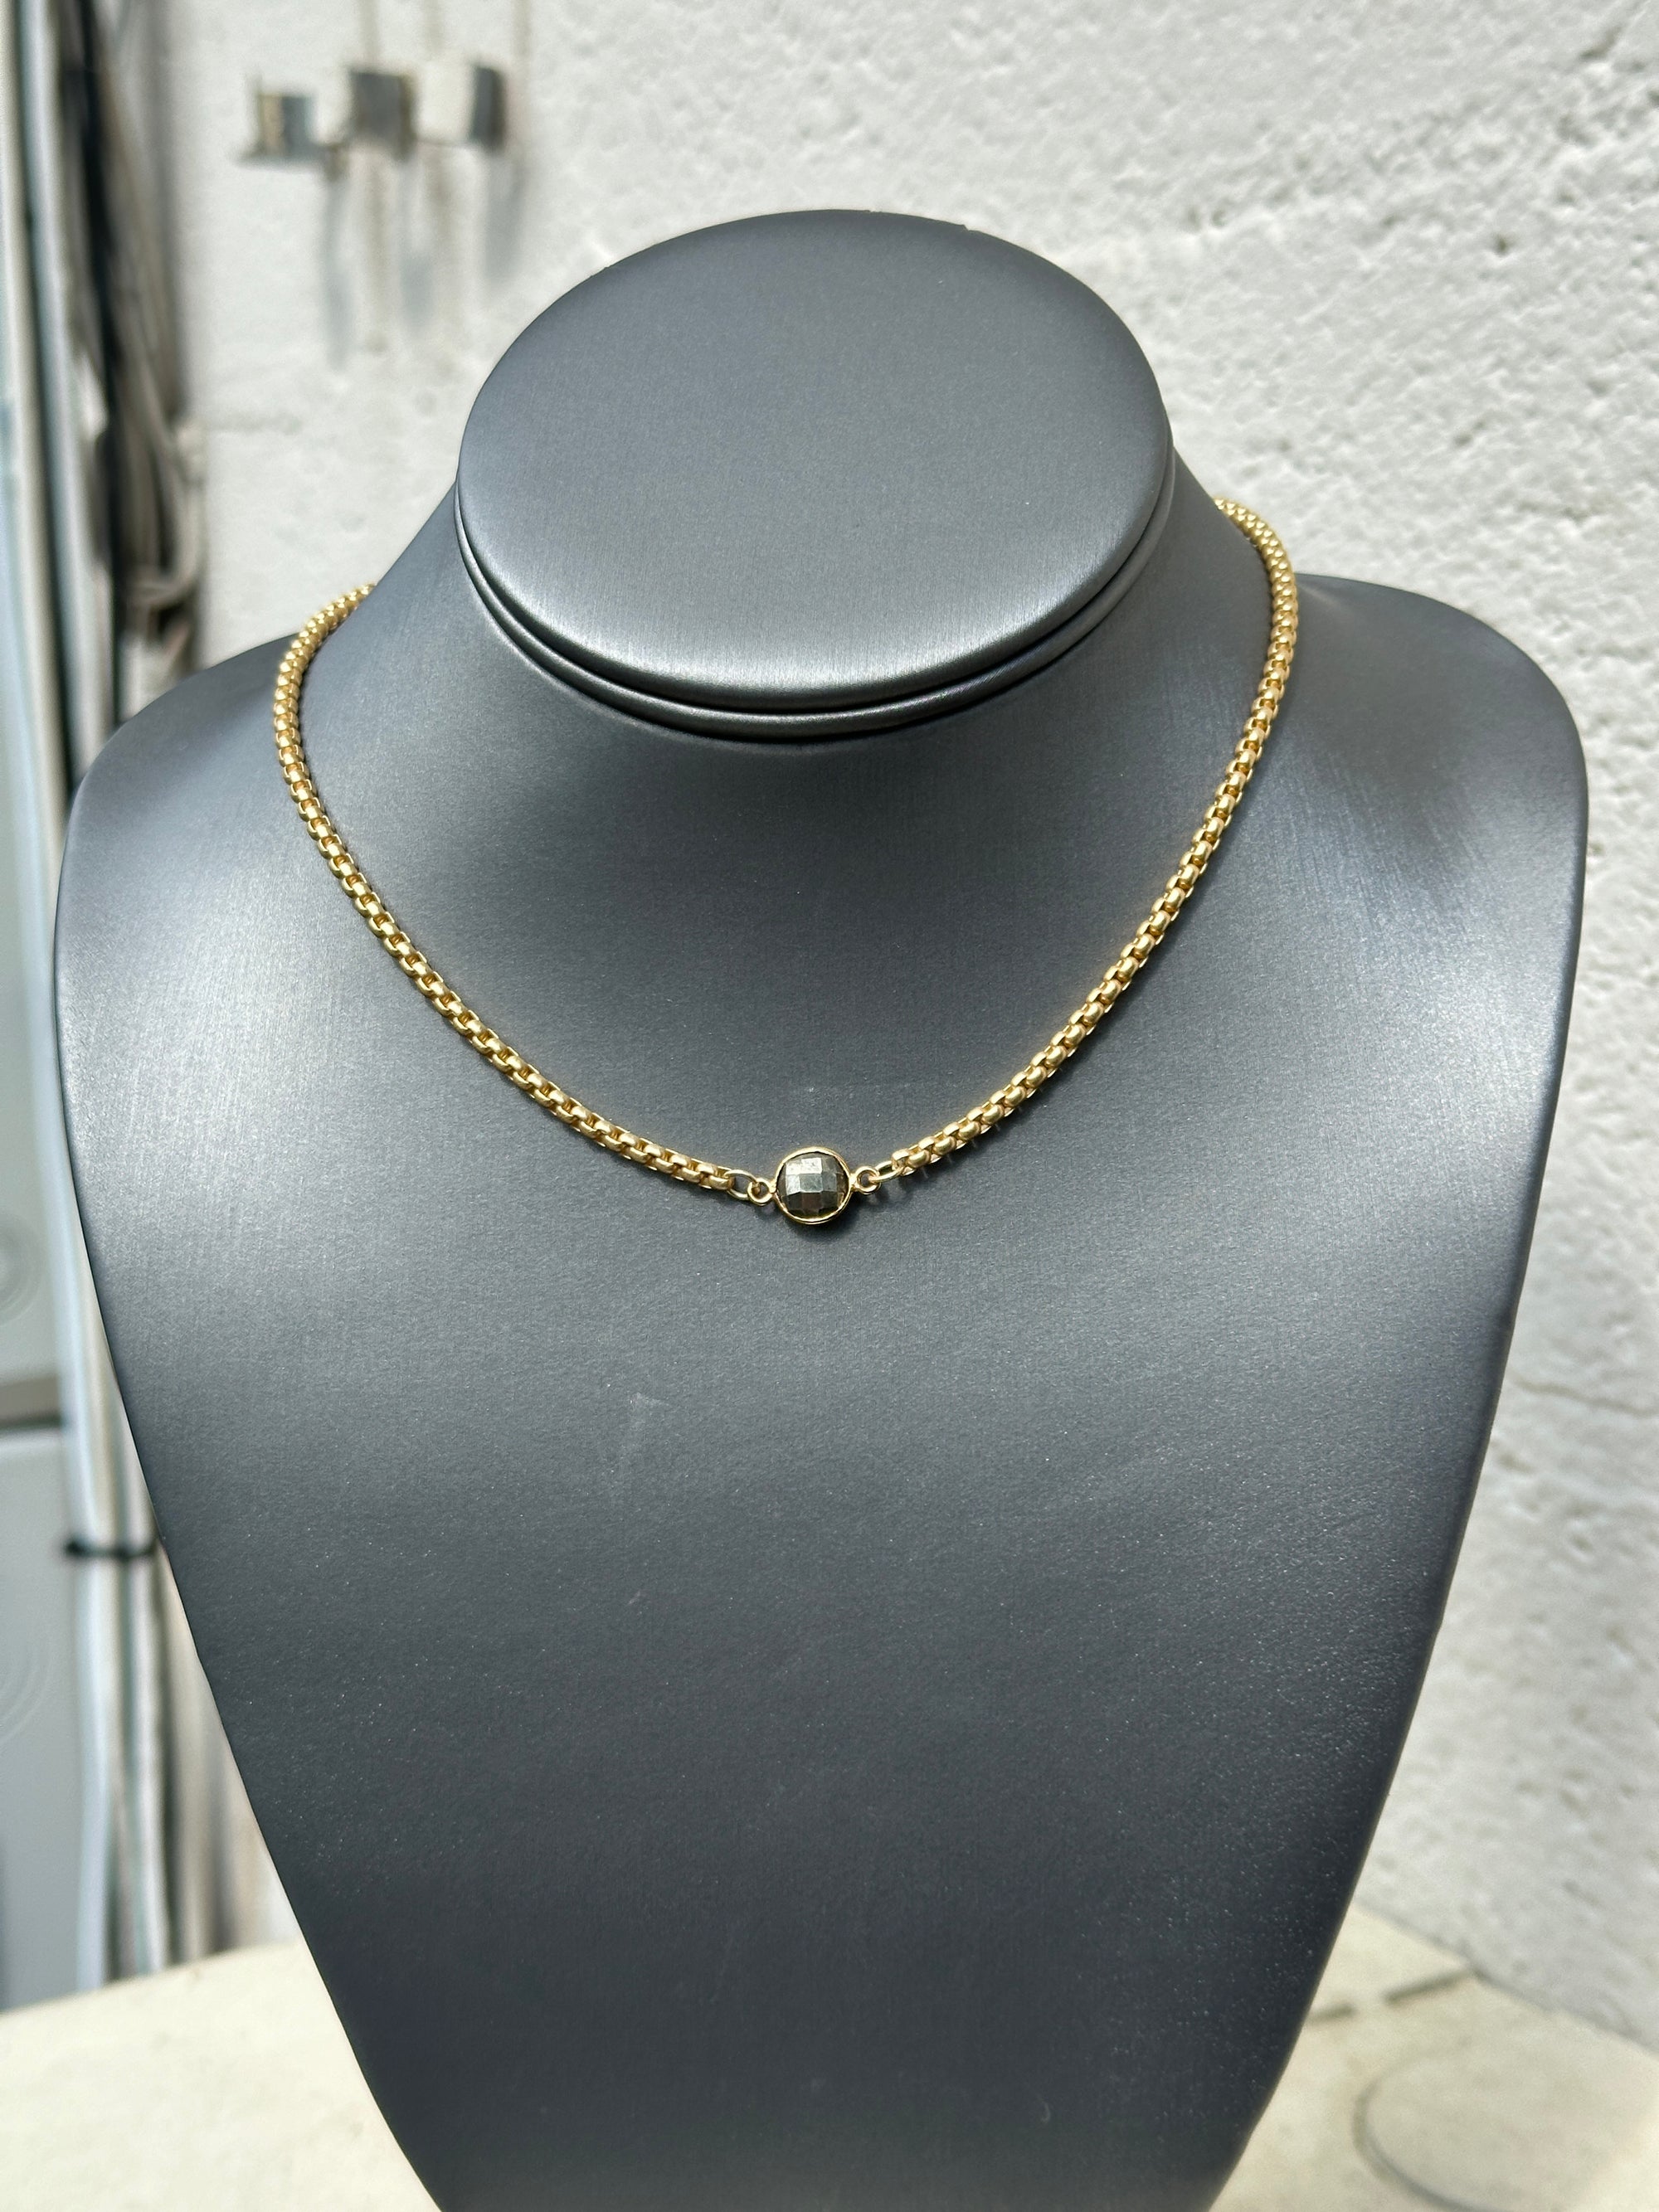 Single Gemstone Necklace